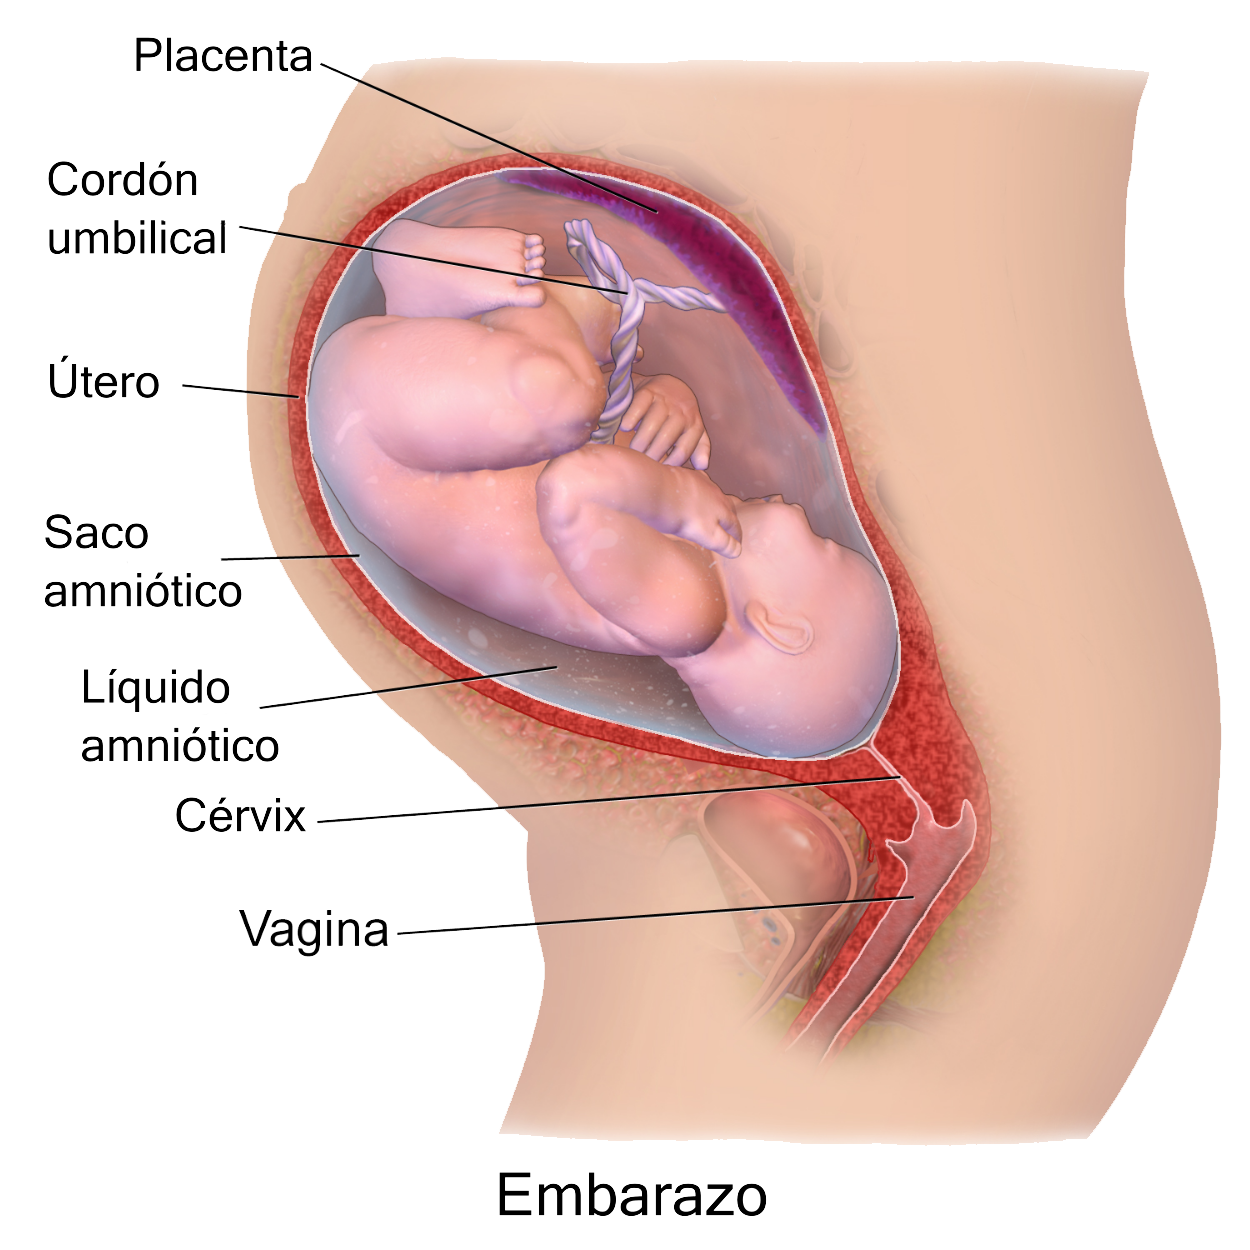 Pregnant Vagina Pics 43